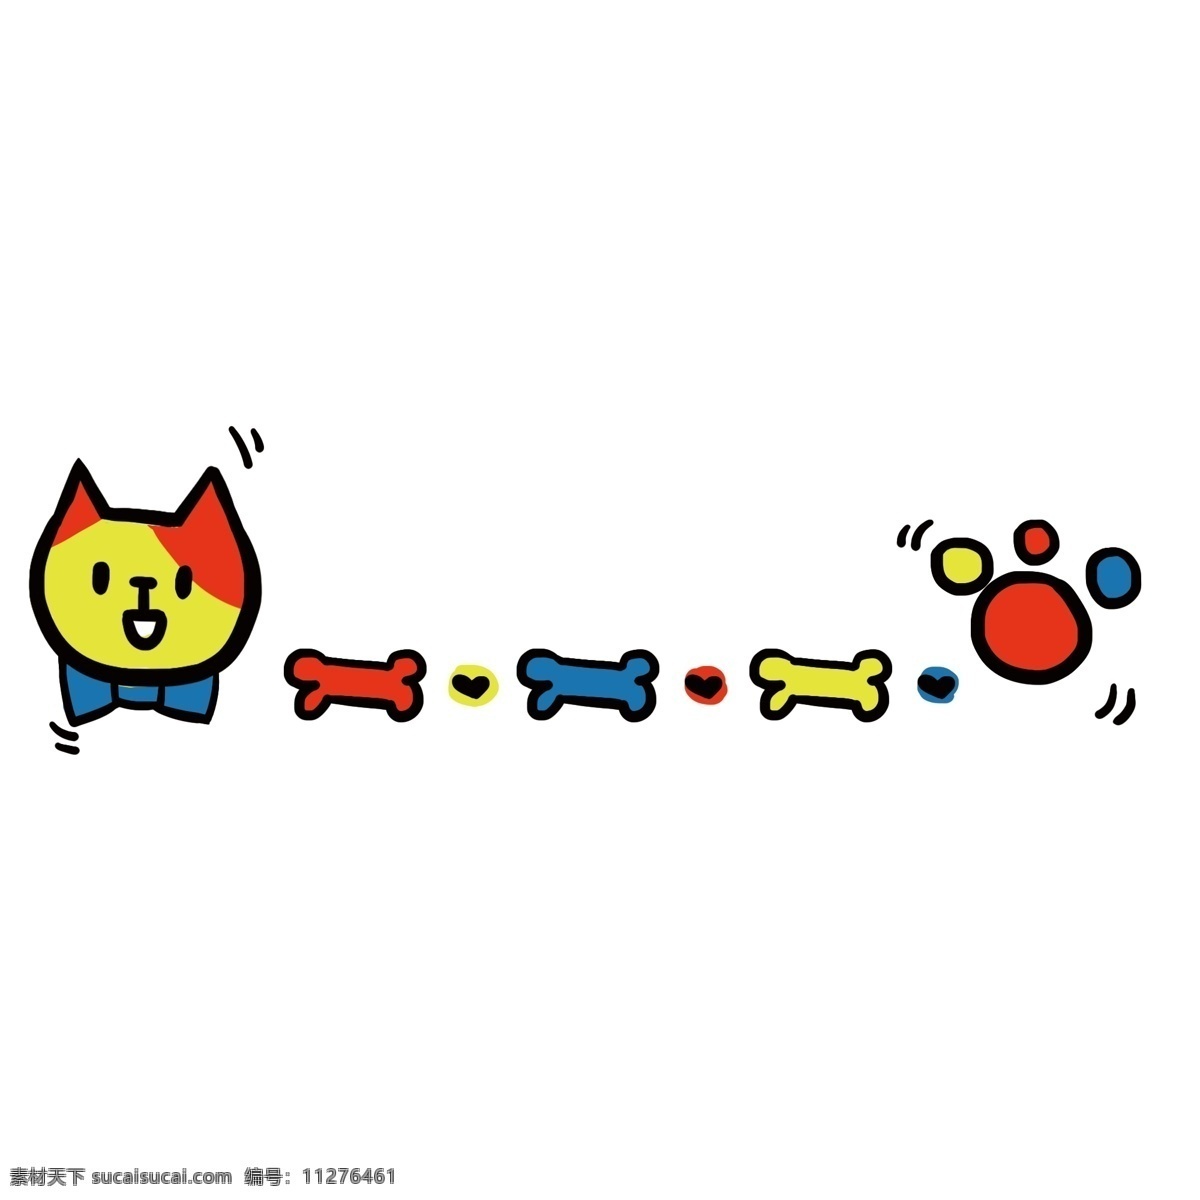 分割线 可爱 猫咪 边框 可爱的猫咪 黄色的骨头 卡通插画 卡通边框 分割线边框 小物边框 五彩的脚印